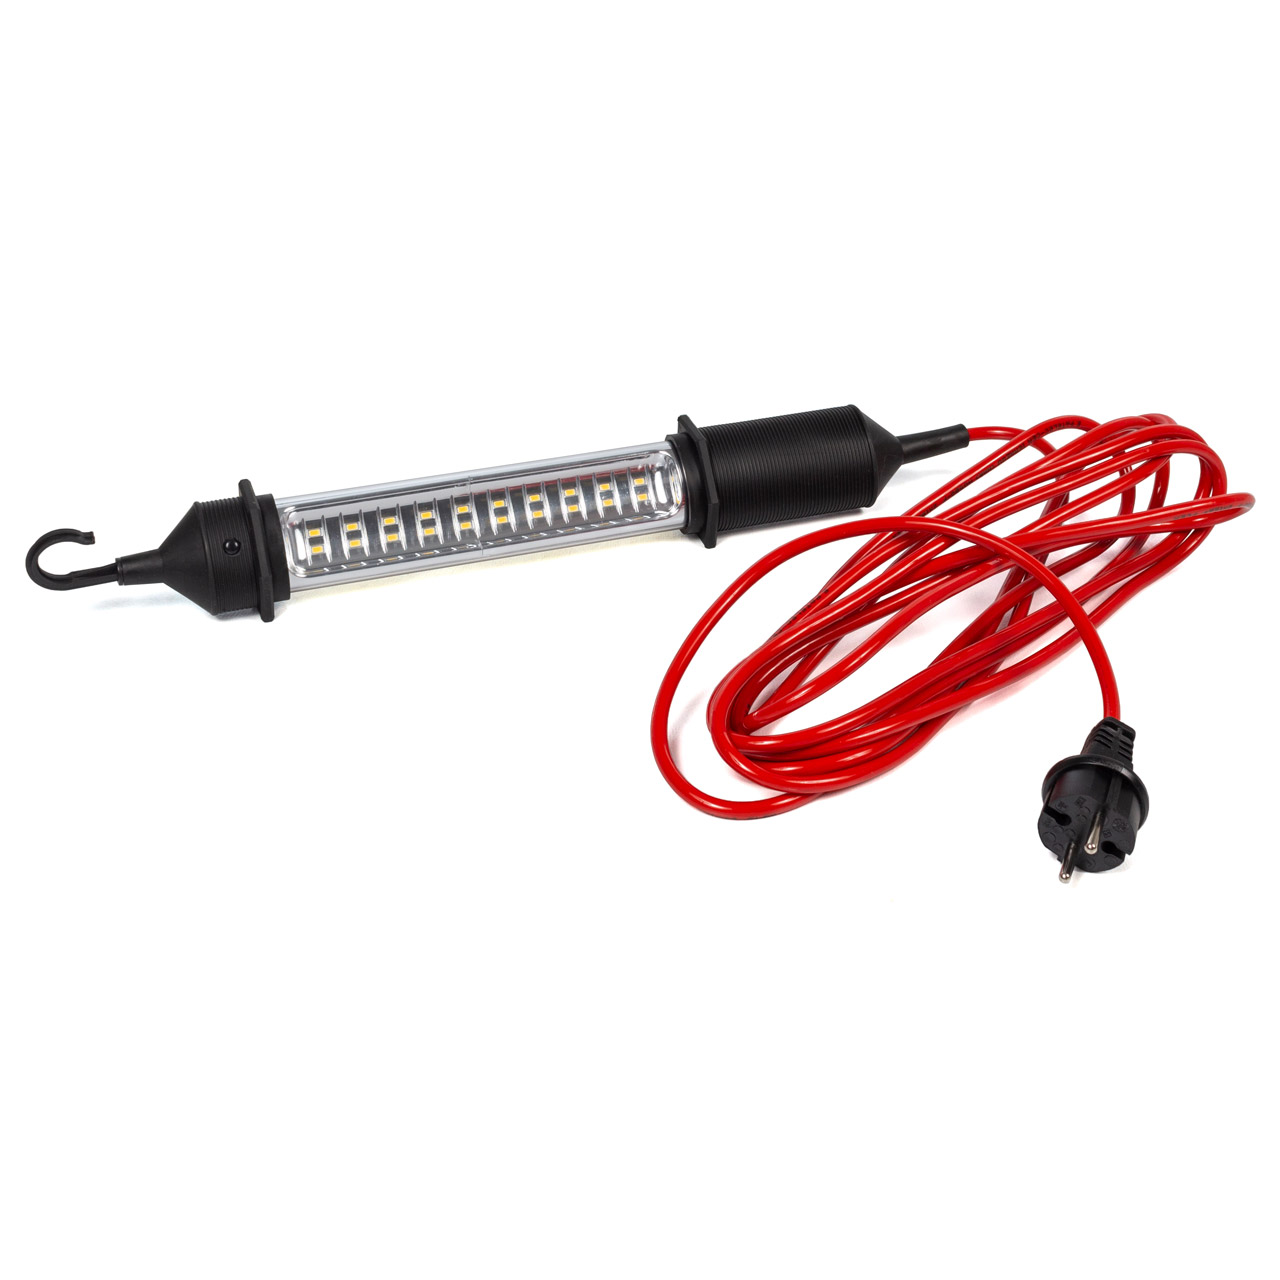 ROHRLUX LED-Lux Werkstattlampe Stablampe Handleuchte Arbeitslampe 6W 220-240V AC